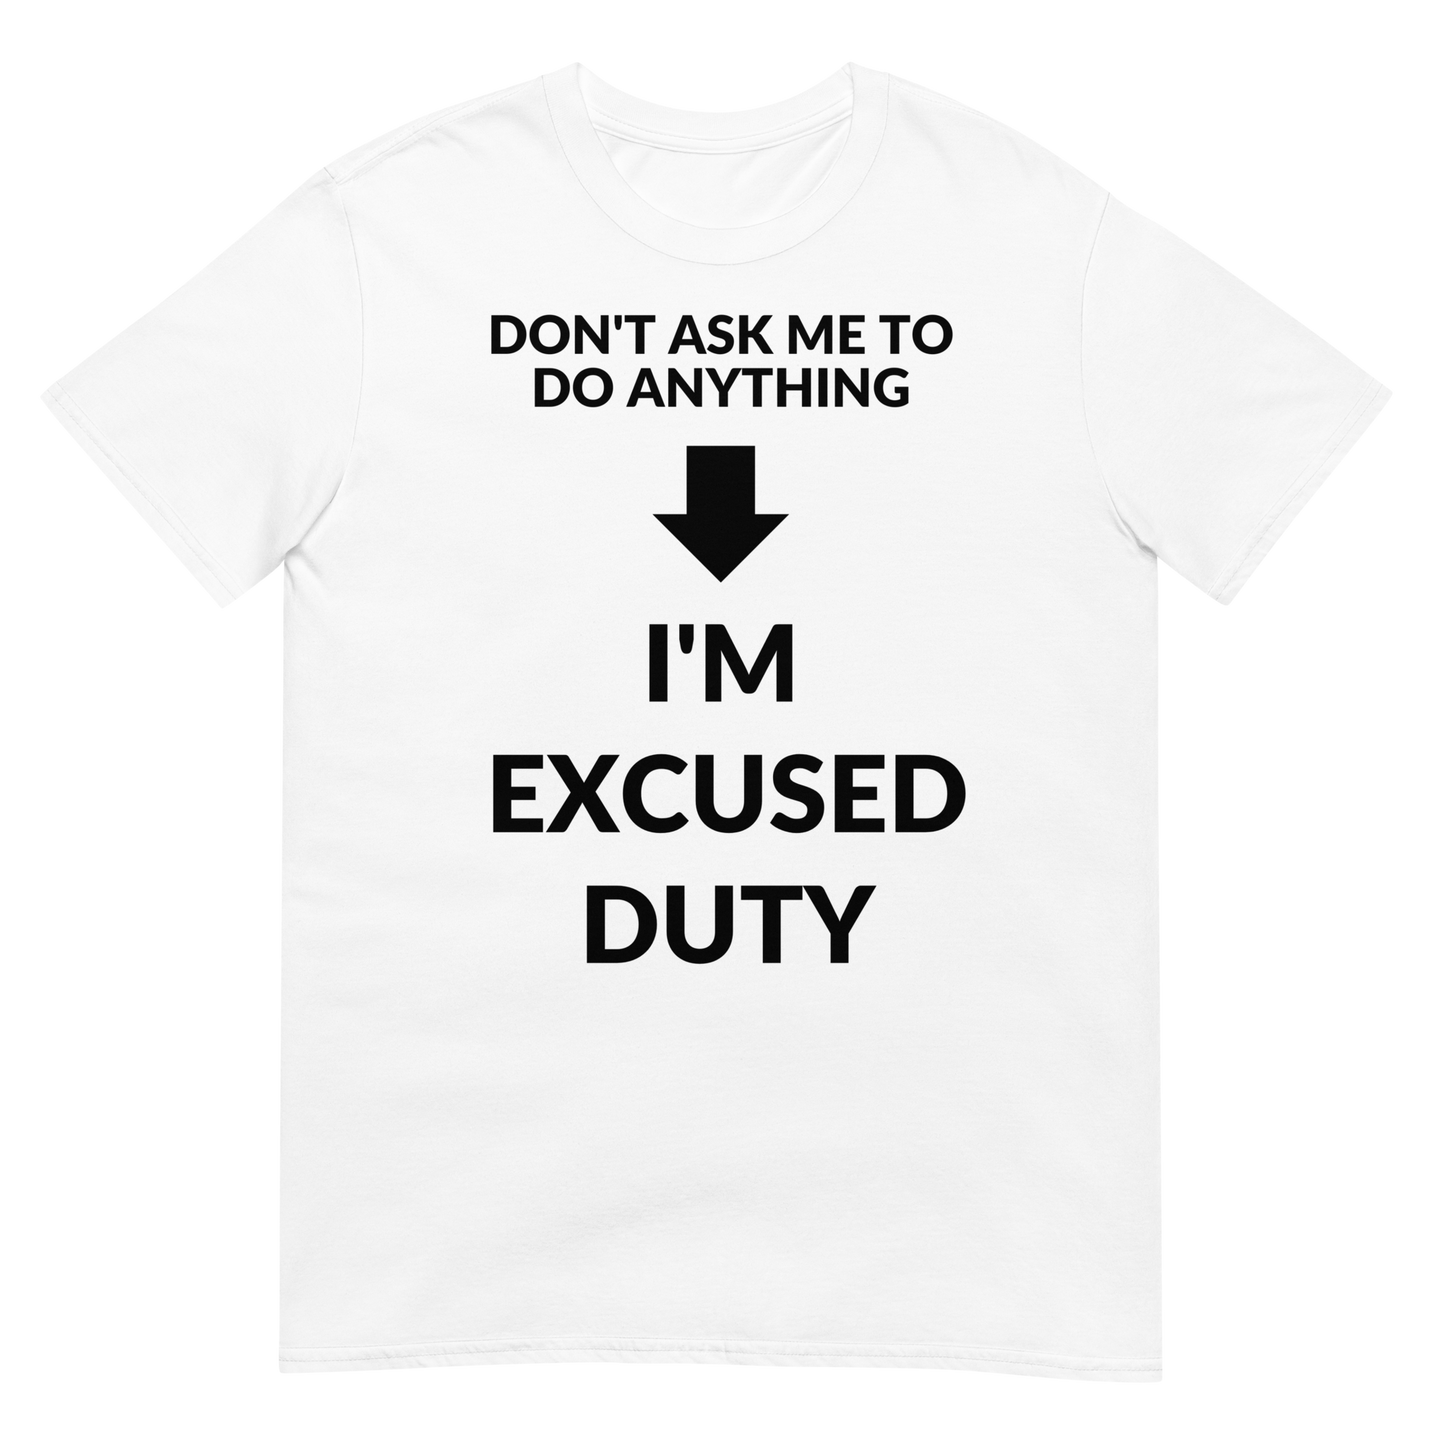 I'm Excused Duty (t-shirt)